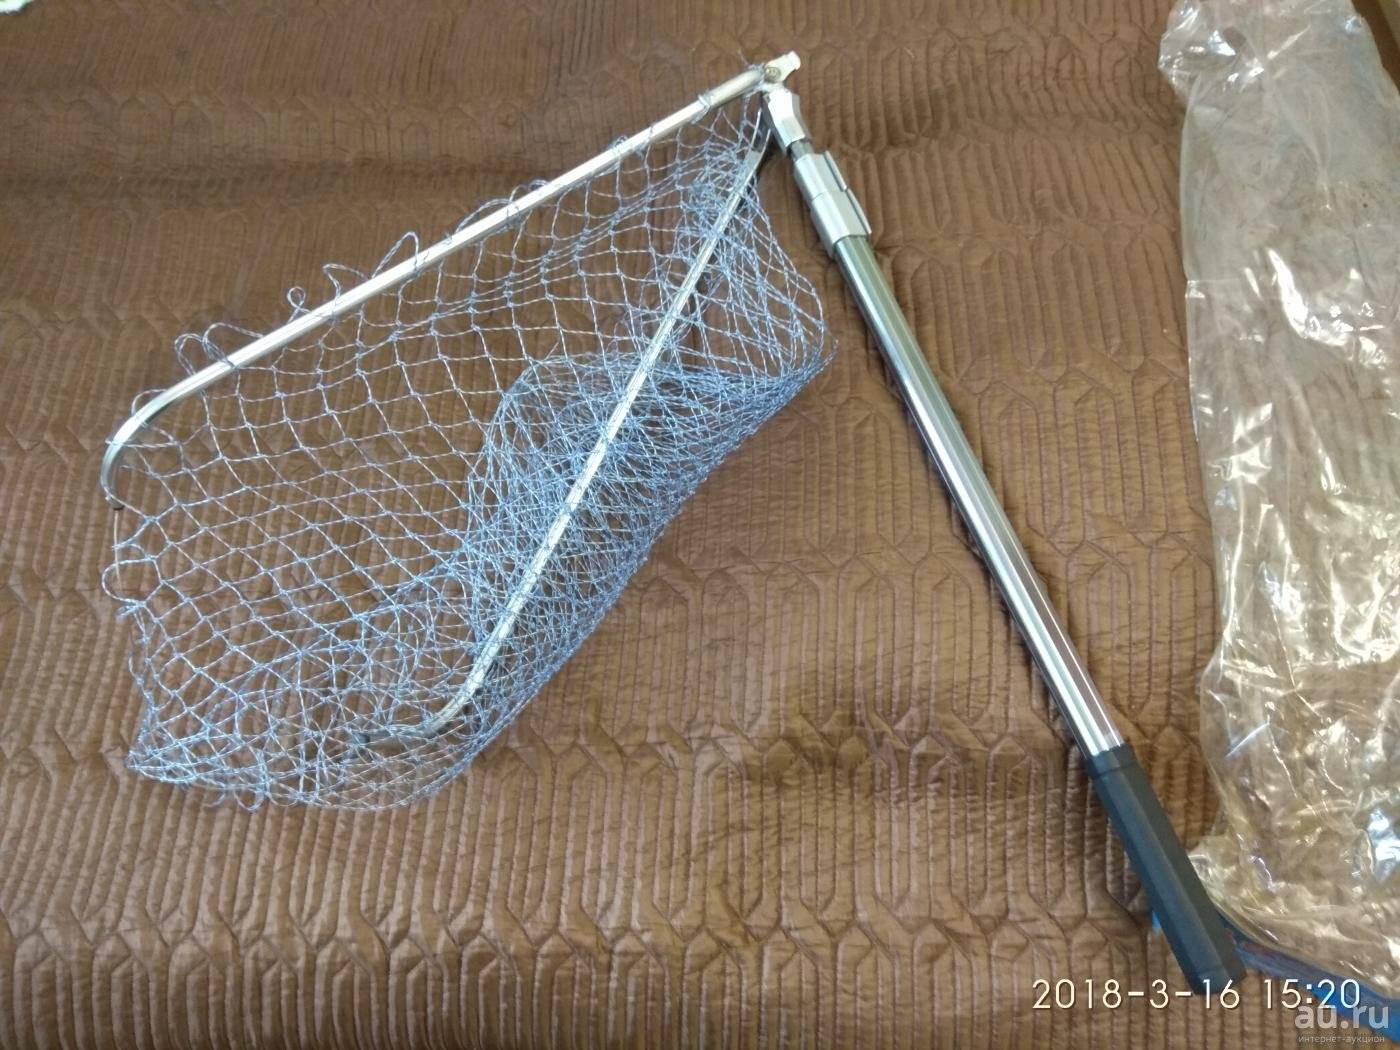 Подсак для рыбалки своими руками — как сделать подсачек, чертежи и рисунки, видео